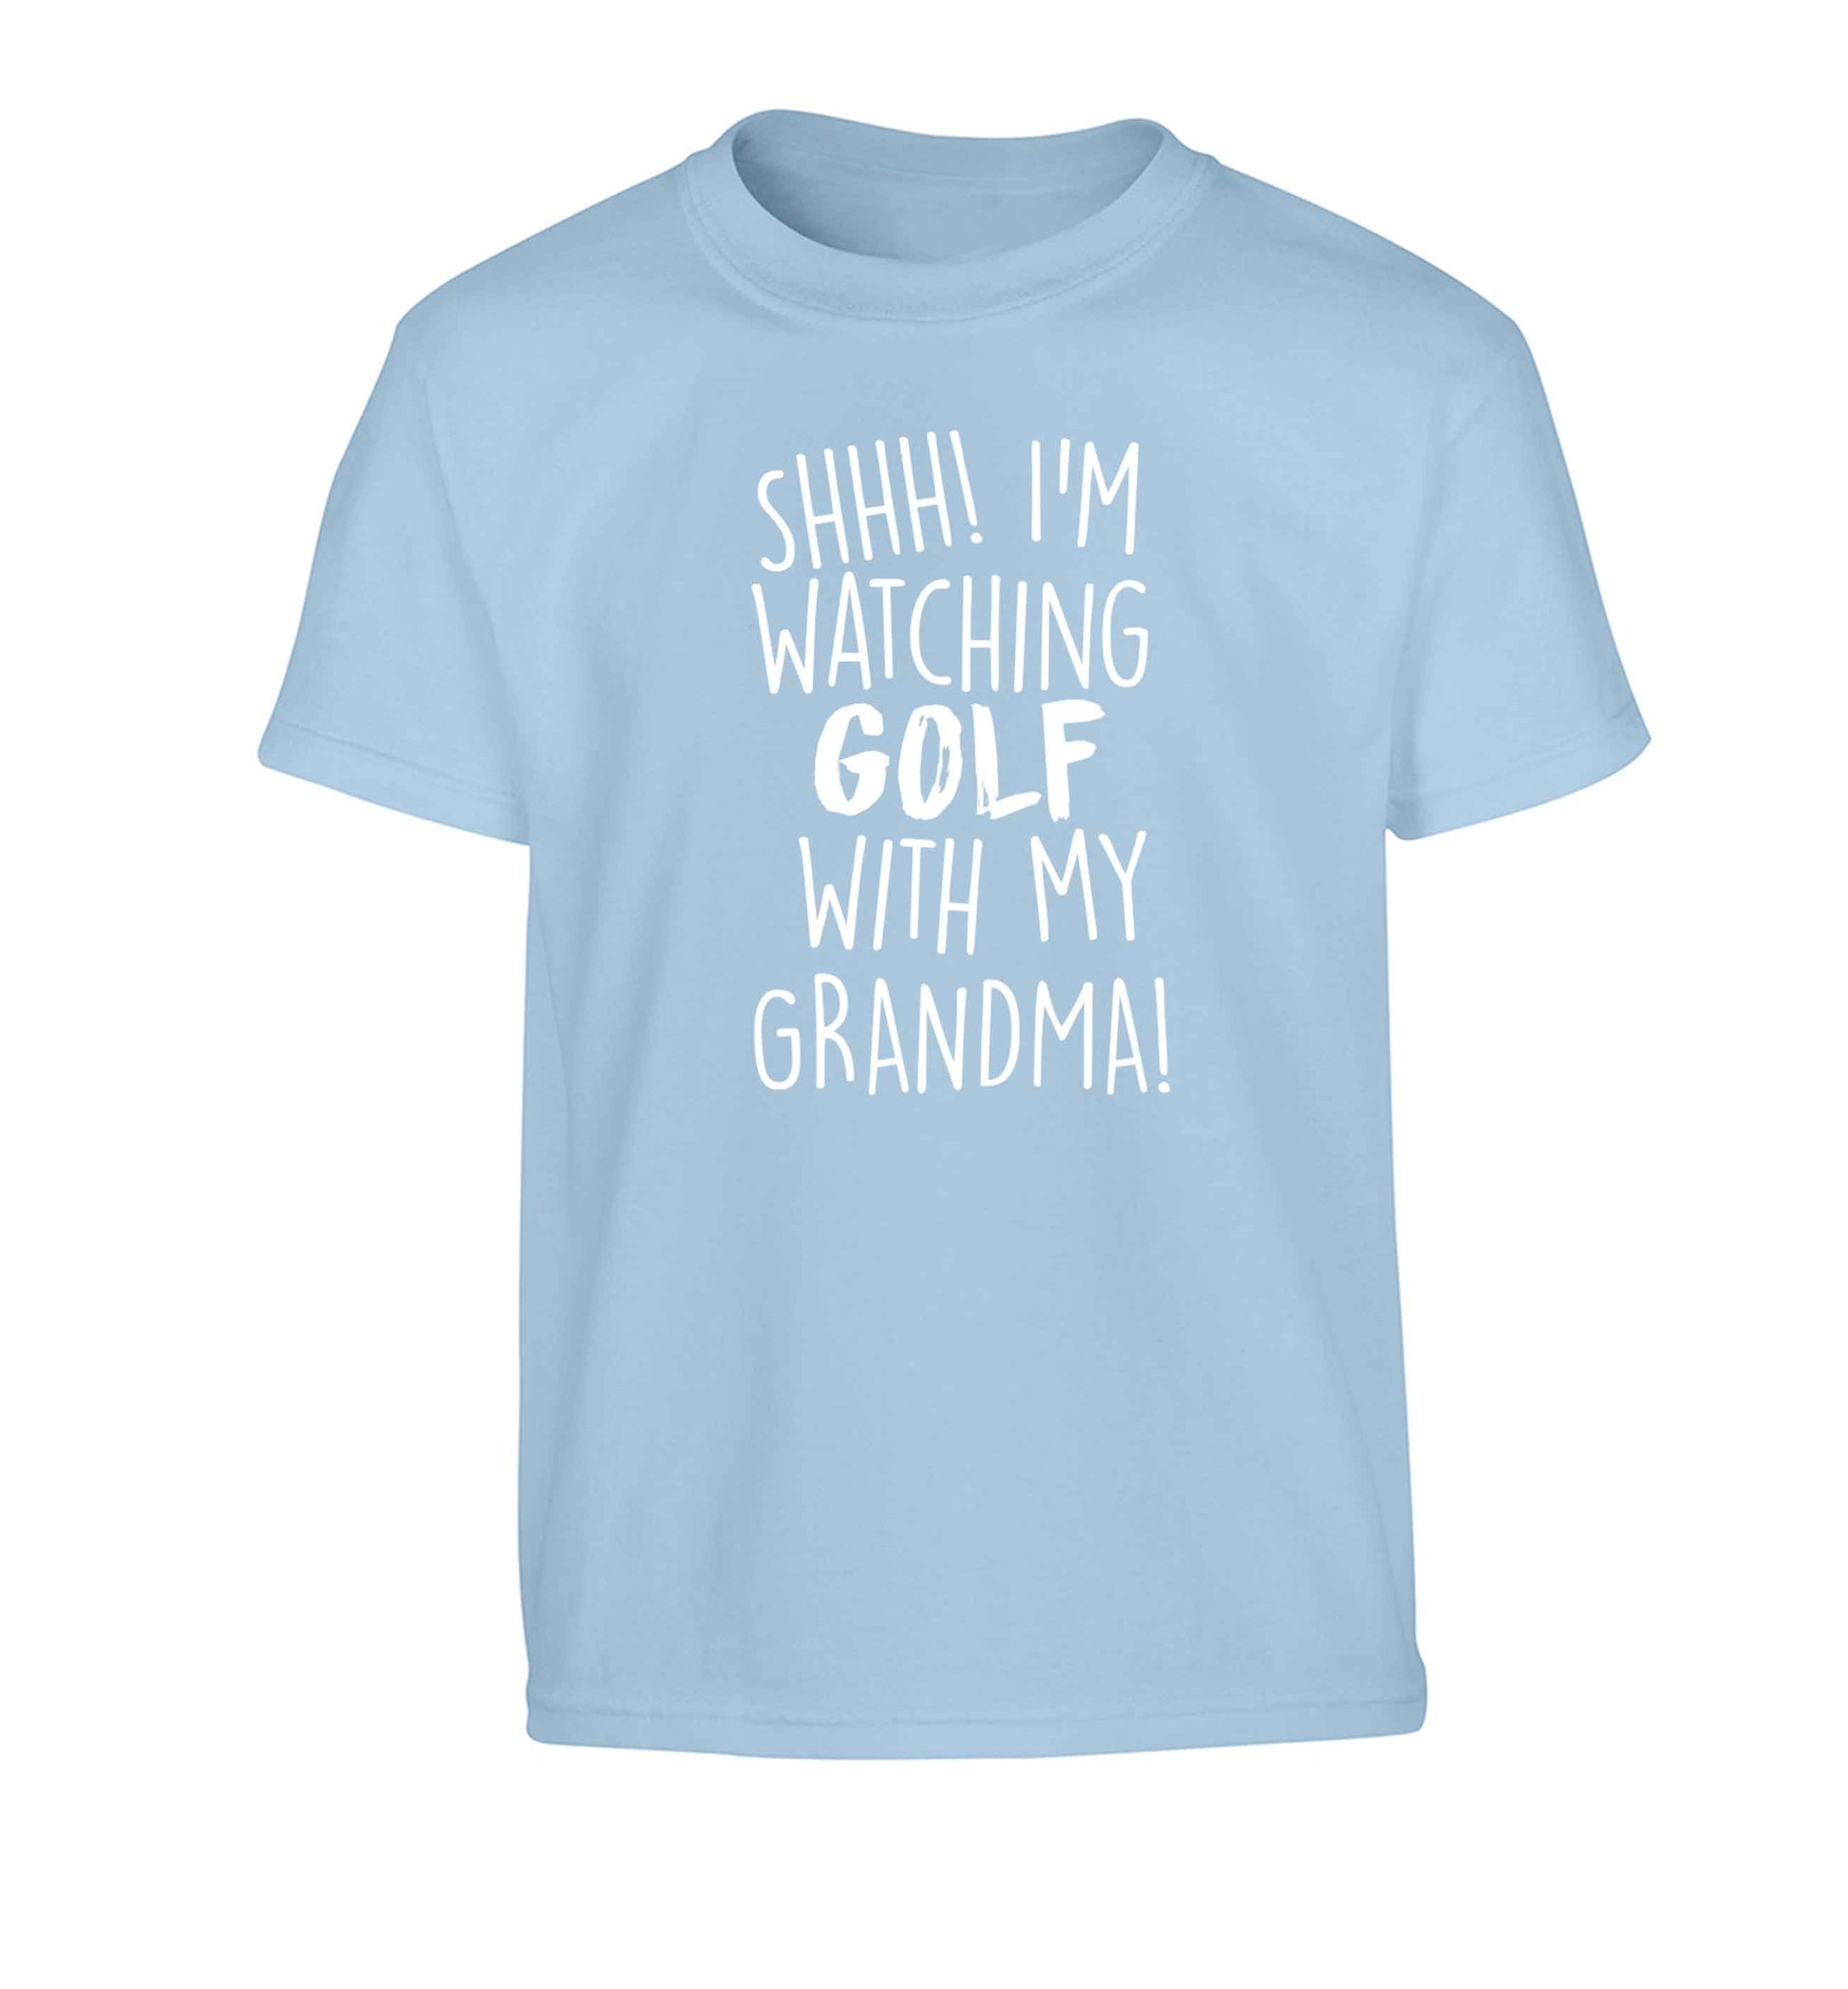 Shh I'm watching golf with my grandma Children's light blue Tshirt 12-13 Years